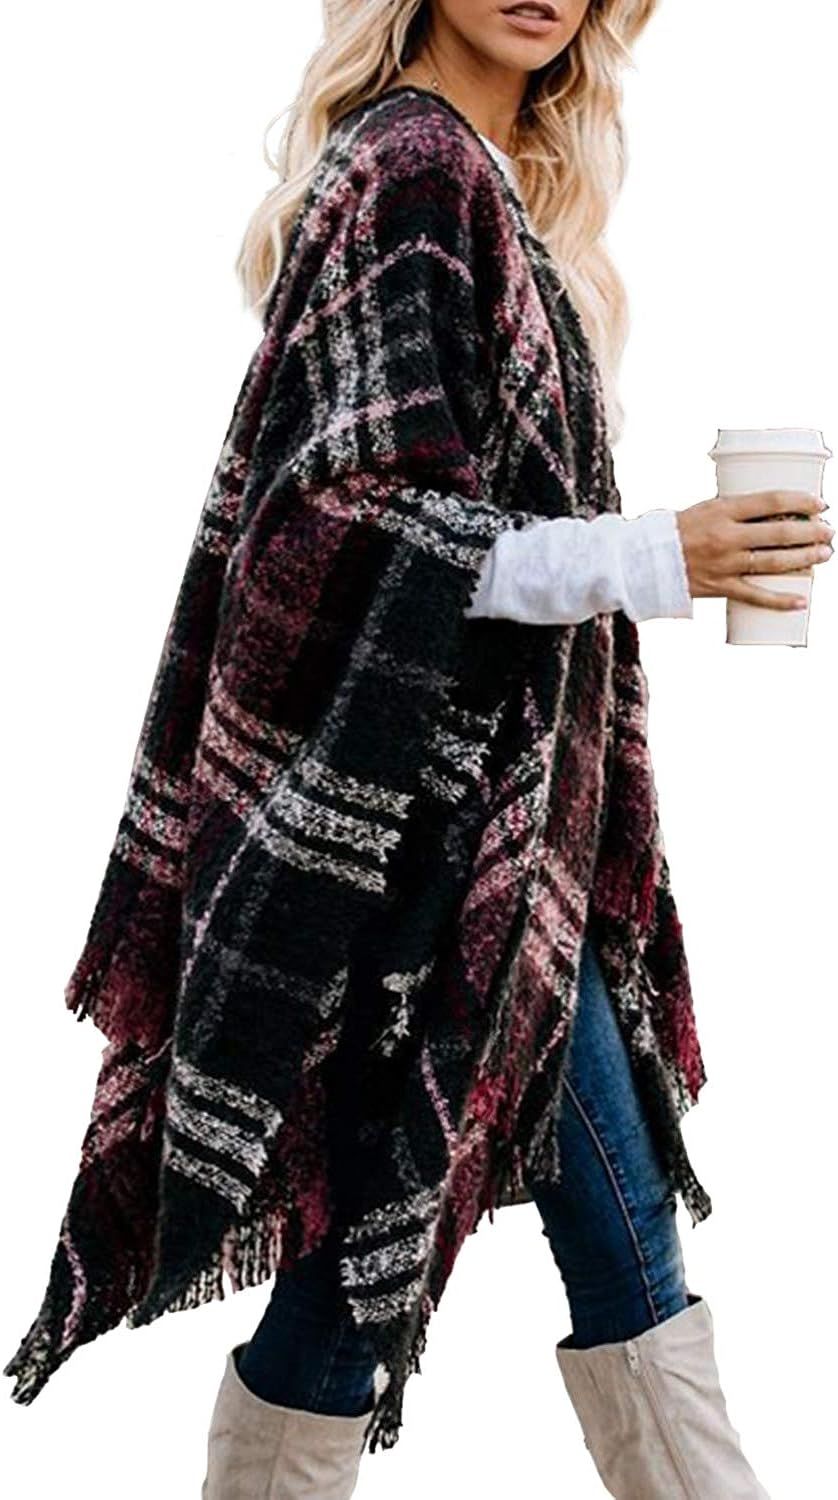 Bestshe Women's Boho Open Front Poncho Knitted Plaid Shawl Wrap Cape Tassel Cardigan Sweater | Amazon (US)